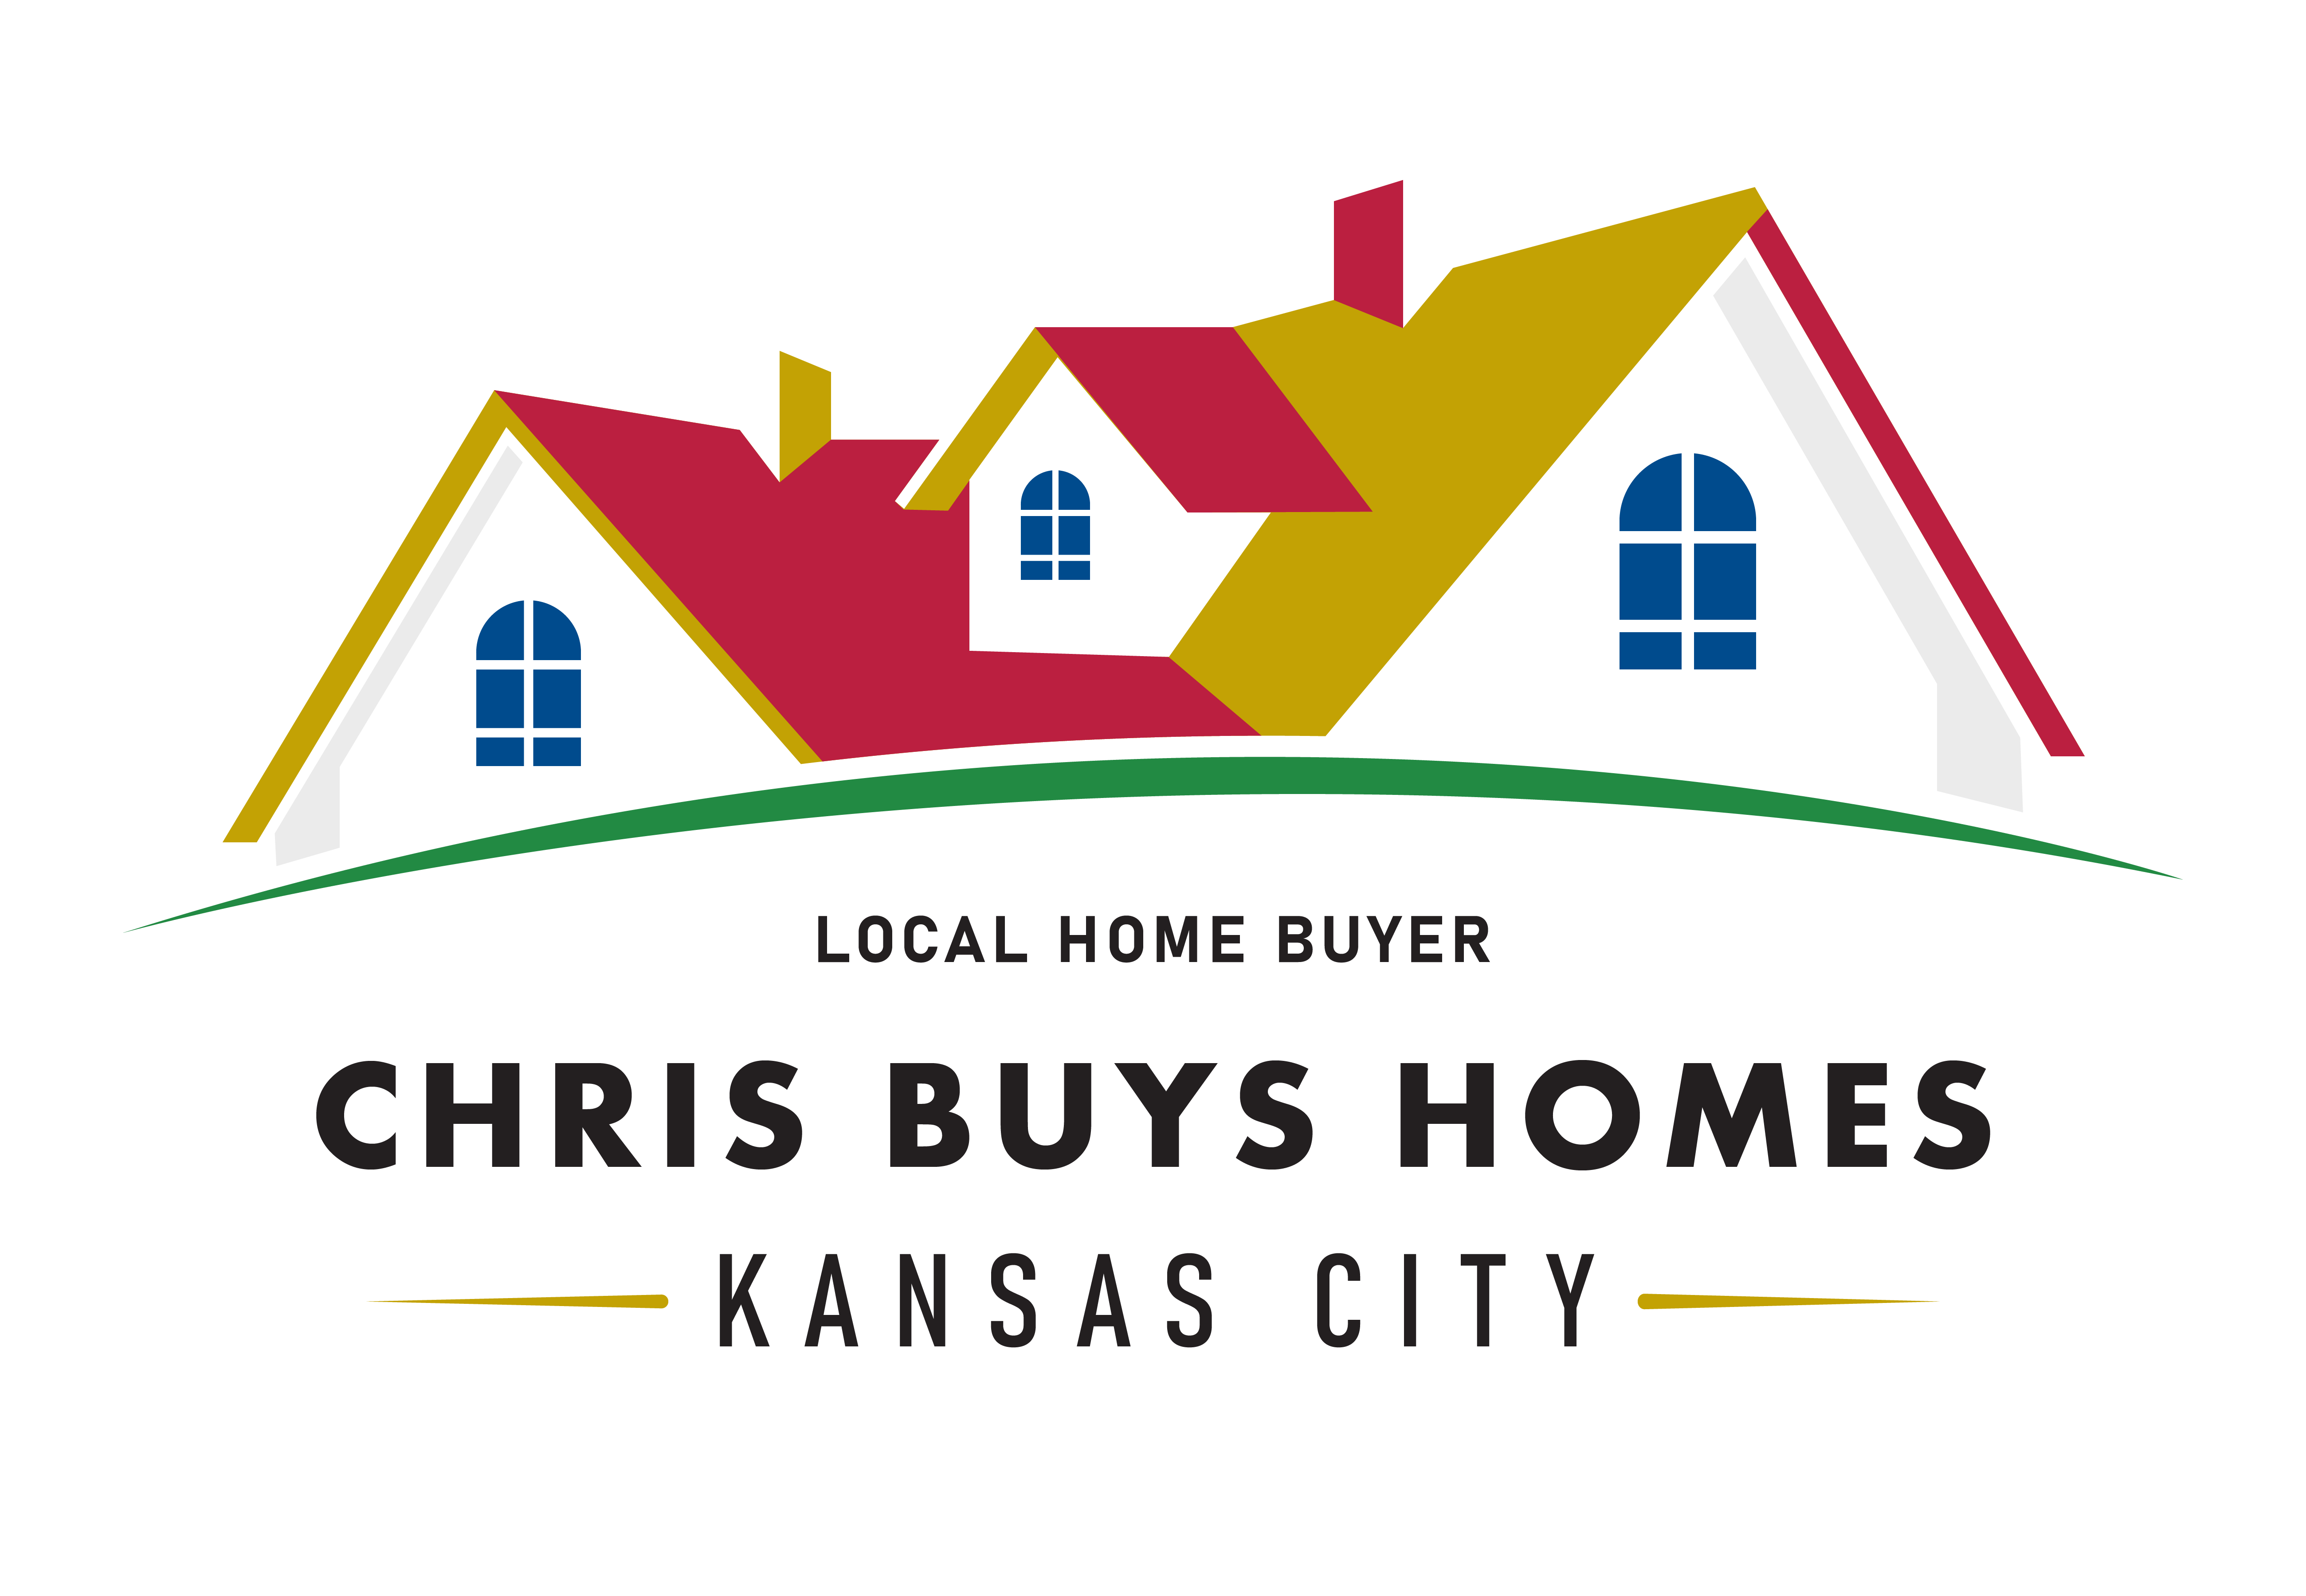 Chris Buys Homes in Kansas City logo